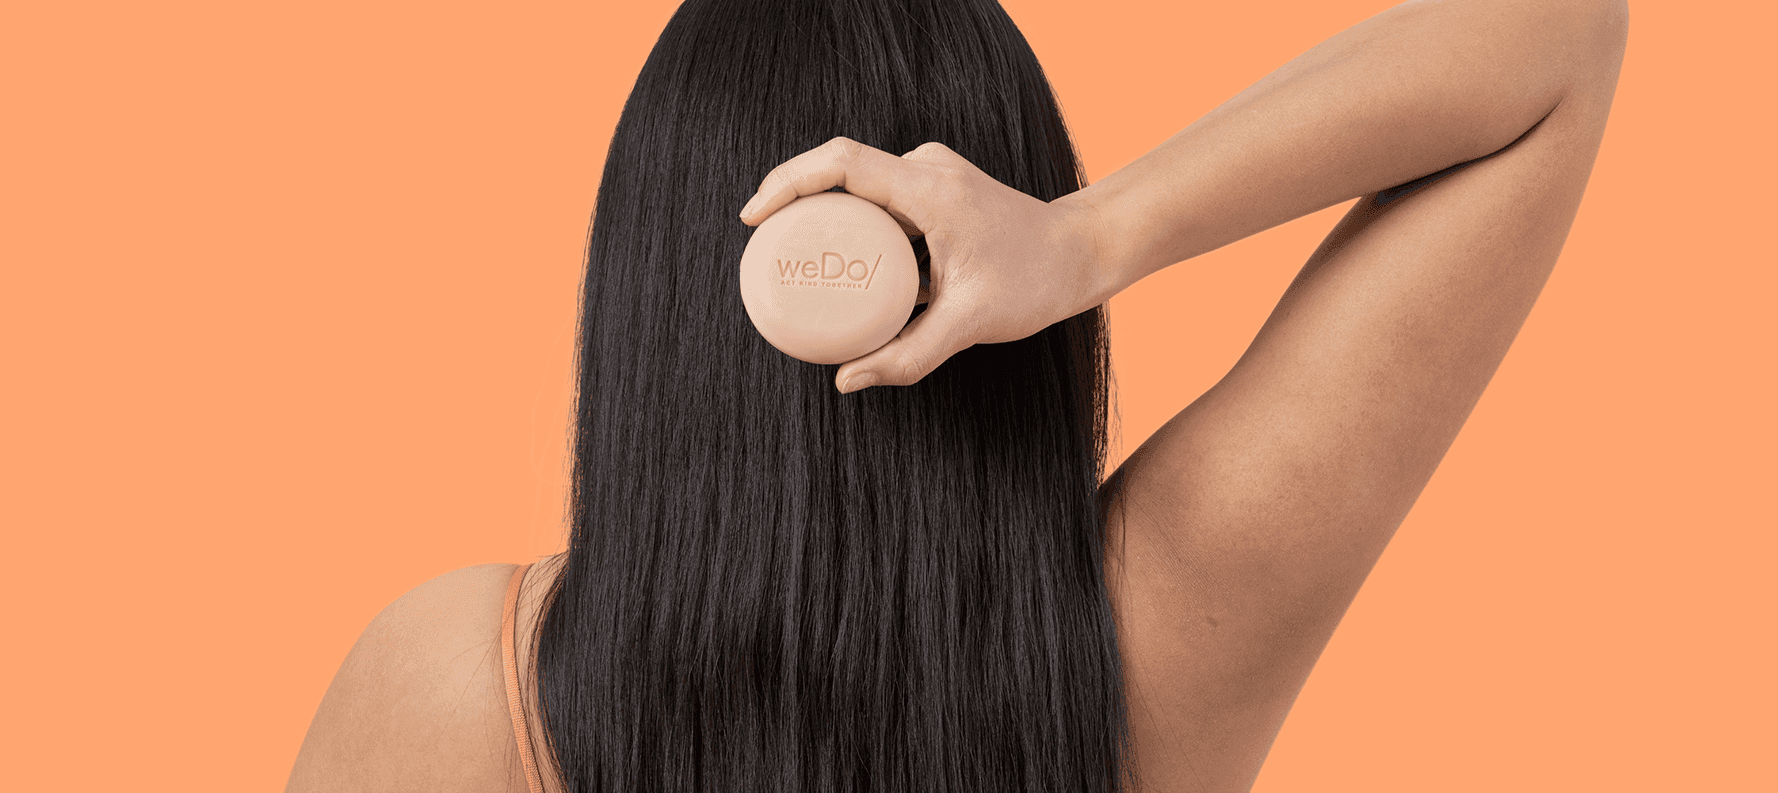 Parte posteriore della testa di donna con lunghi capelli neri, con in mano la barra shampoo senza plastica di weDo/